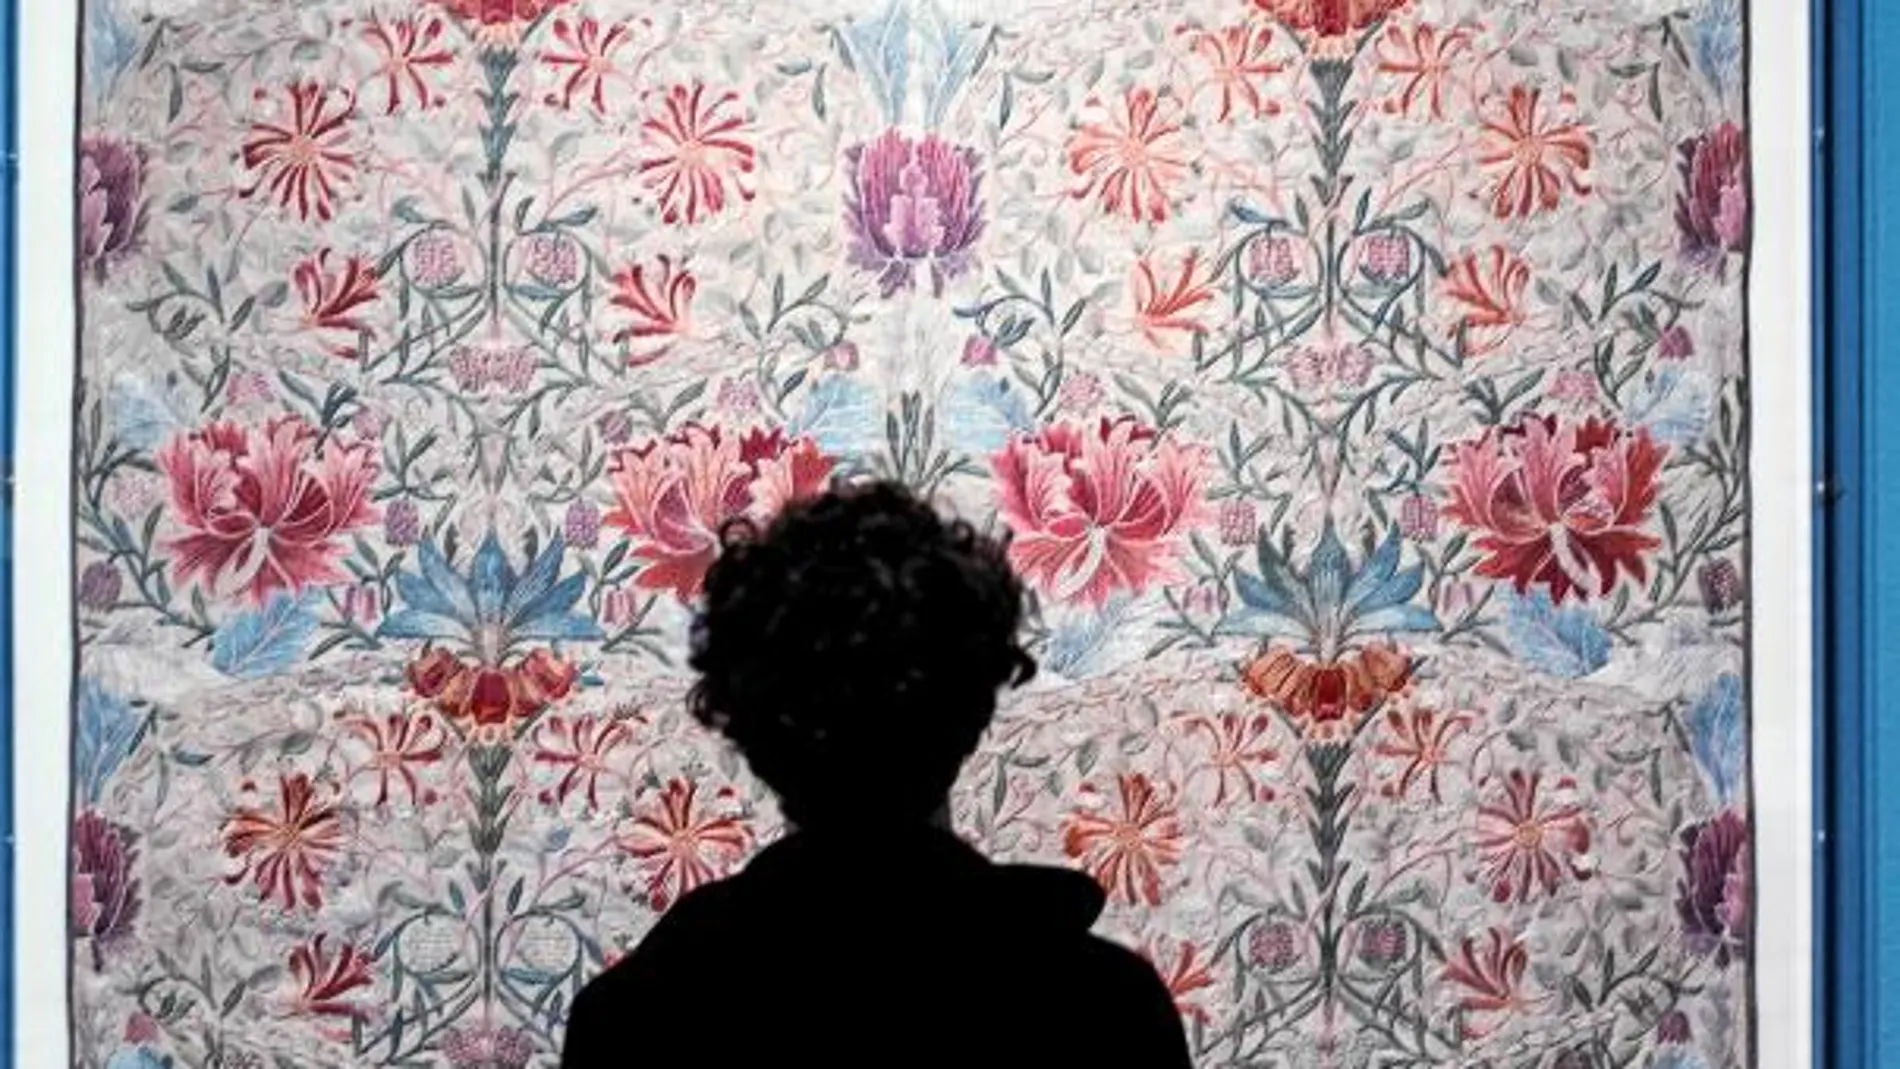 La obra «Madreselva» de William Morris es una de las obras maestras del Arts and Crafts, puede verse ahora en la exposición que ha abierto sus puertas en el Mnac